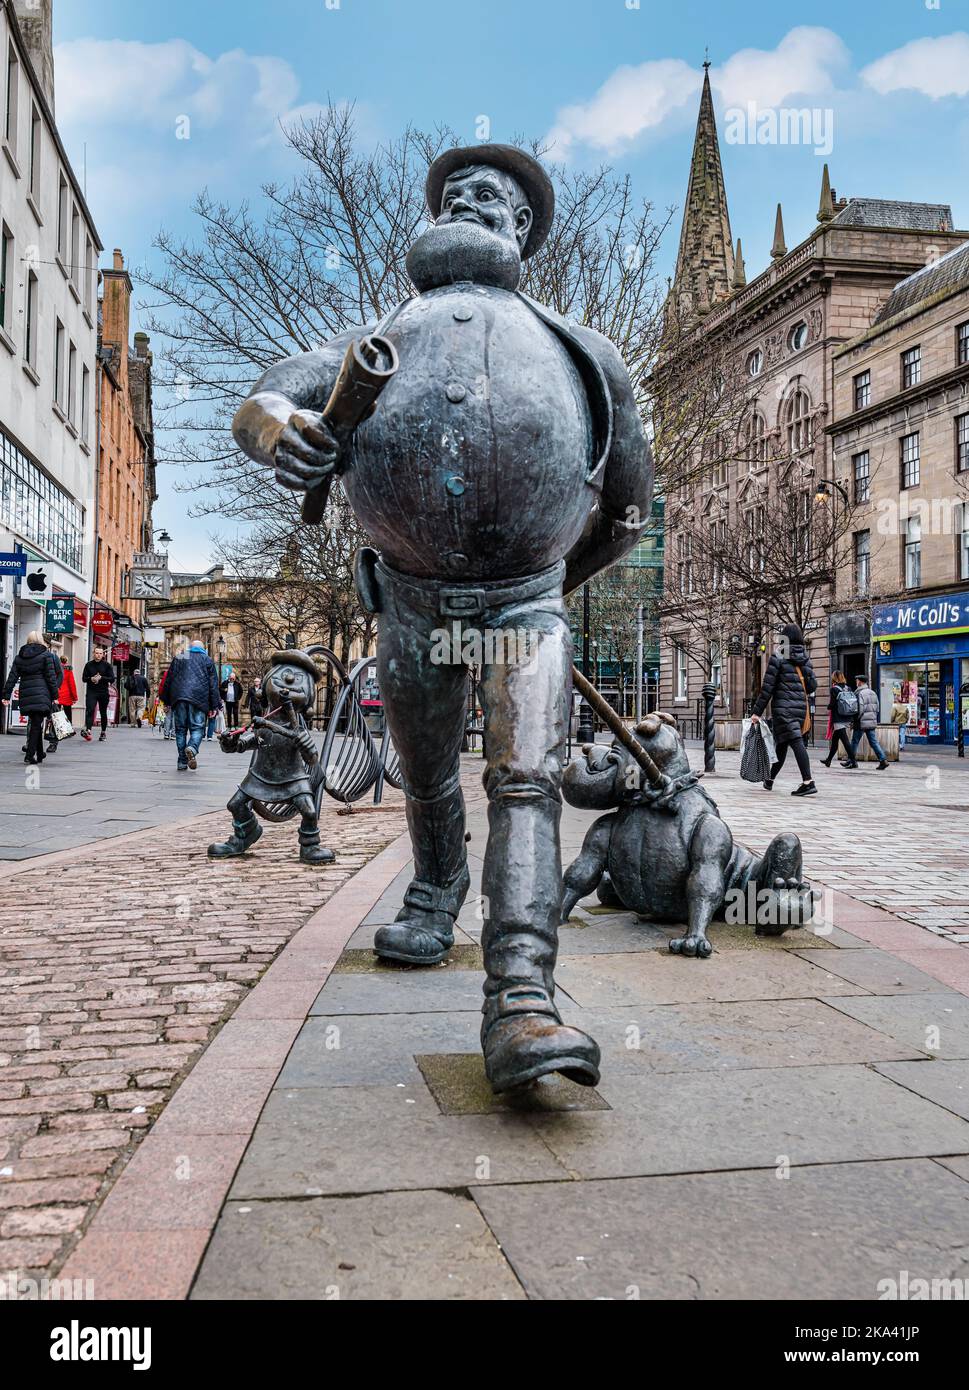 Bronzeskulptur der Comicfigur Desperate Dan von Beano, Minnie the Minx & Pug, Dundee High Street, Schottland, Großbritannien Stockfoto